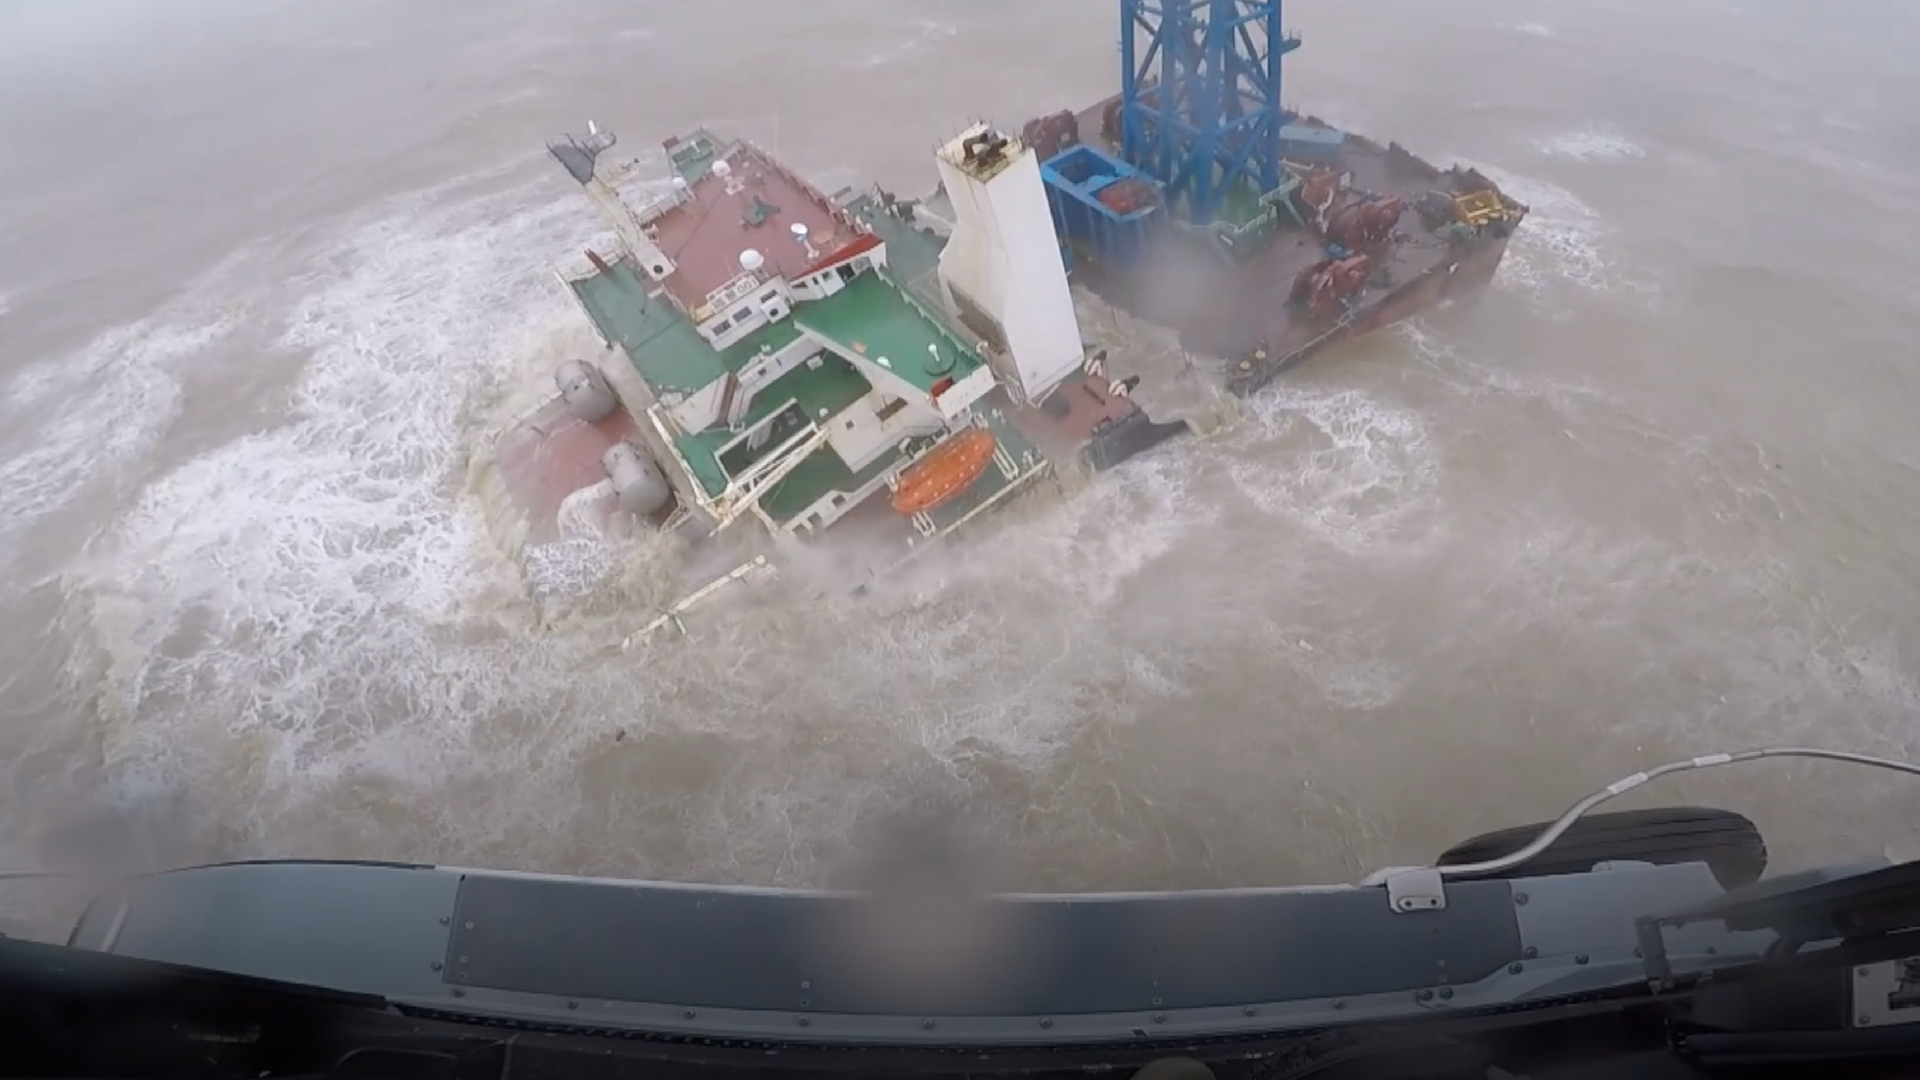 Южно китайское море Тайфун. Затонувшие суда. Инженерное судно. Тайфун у экипаж.